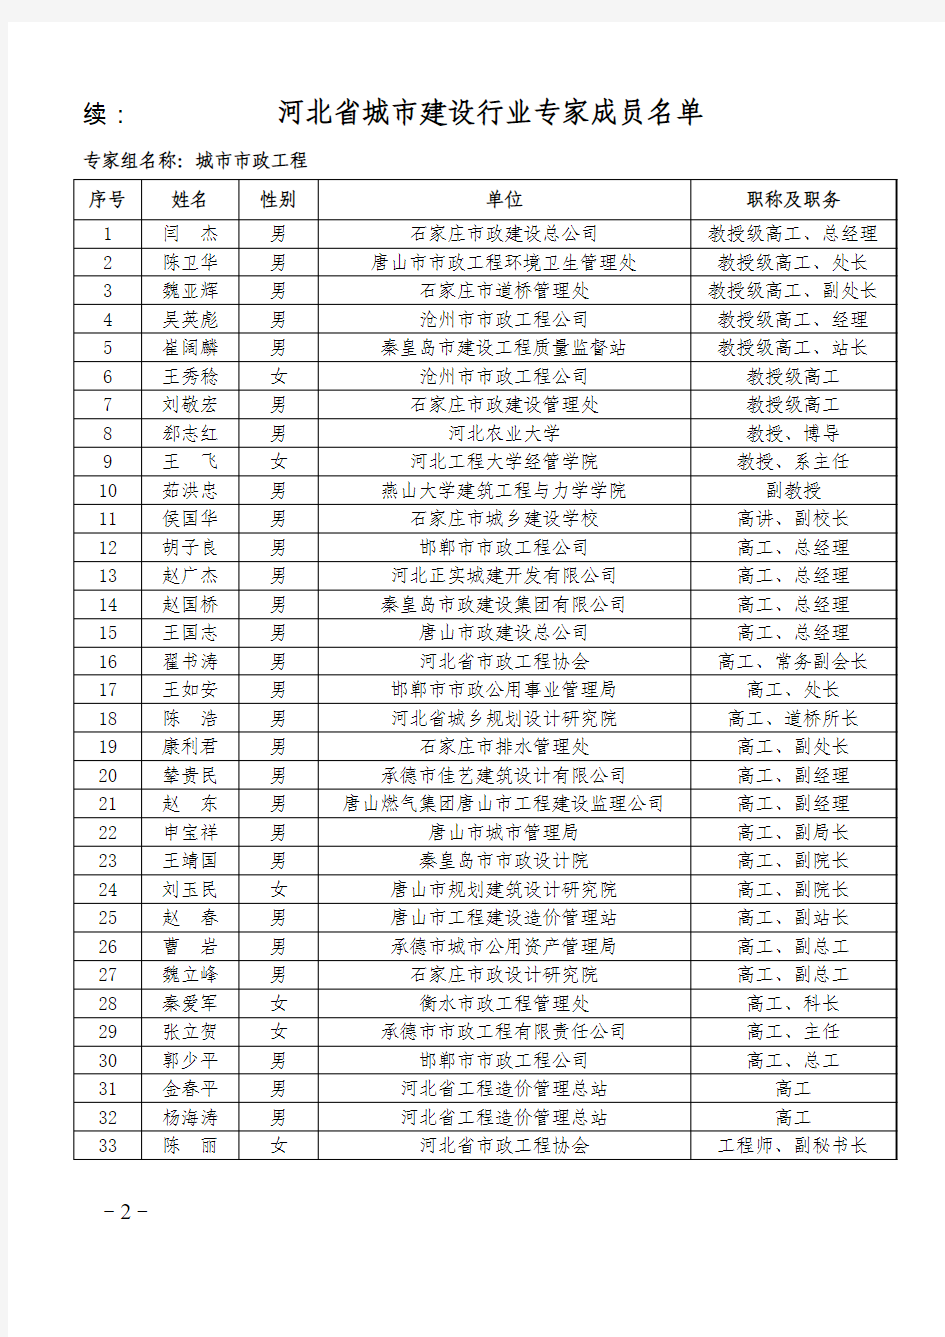 河北省城市建设行业专家成员名单